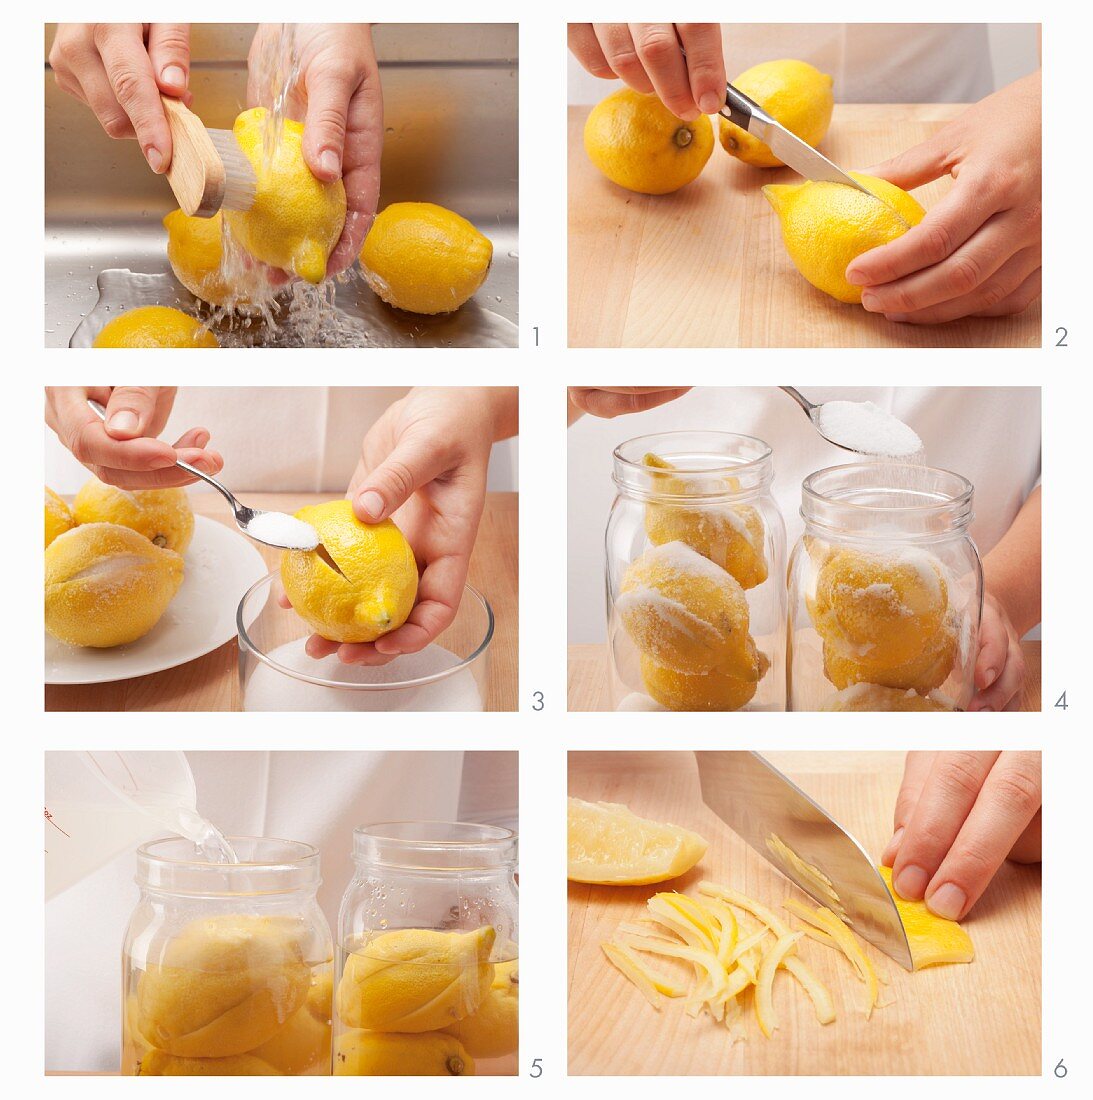 Salted lemons being prepared